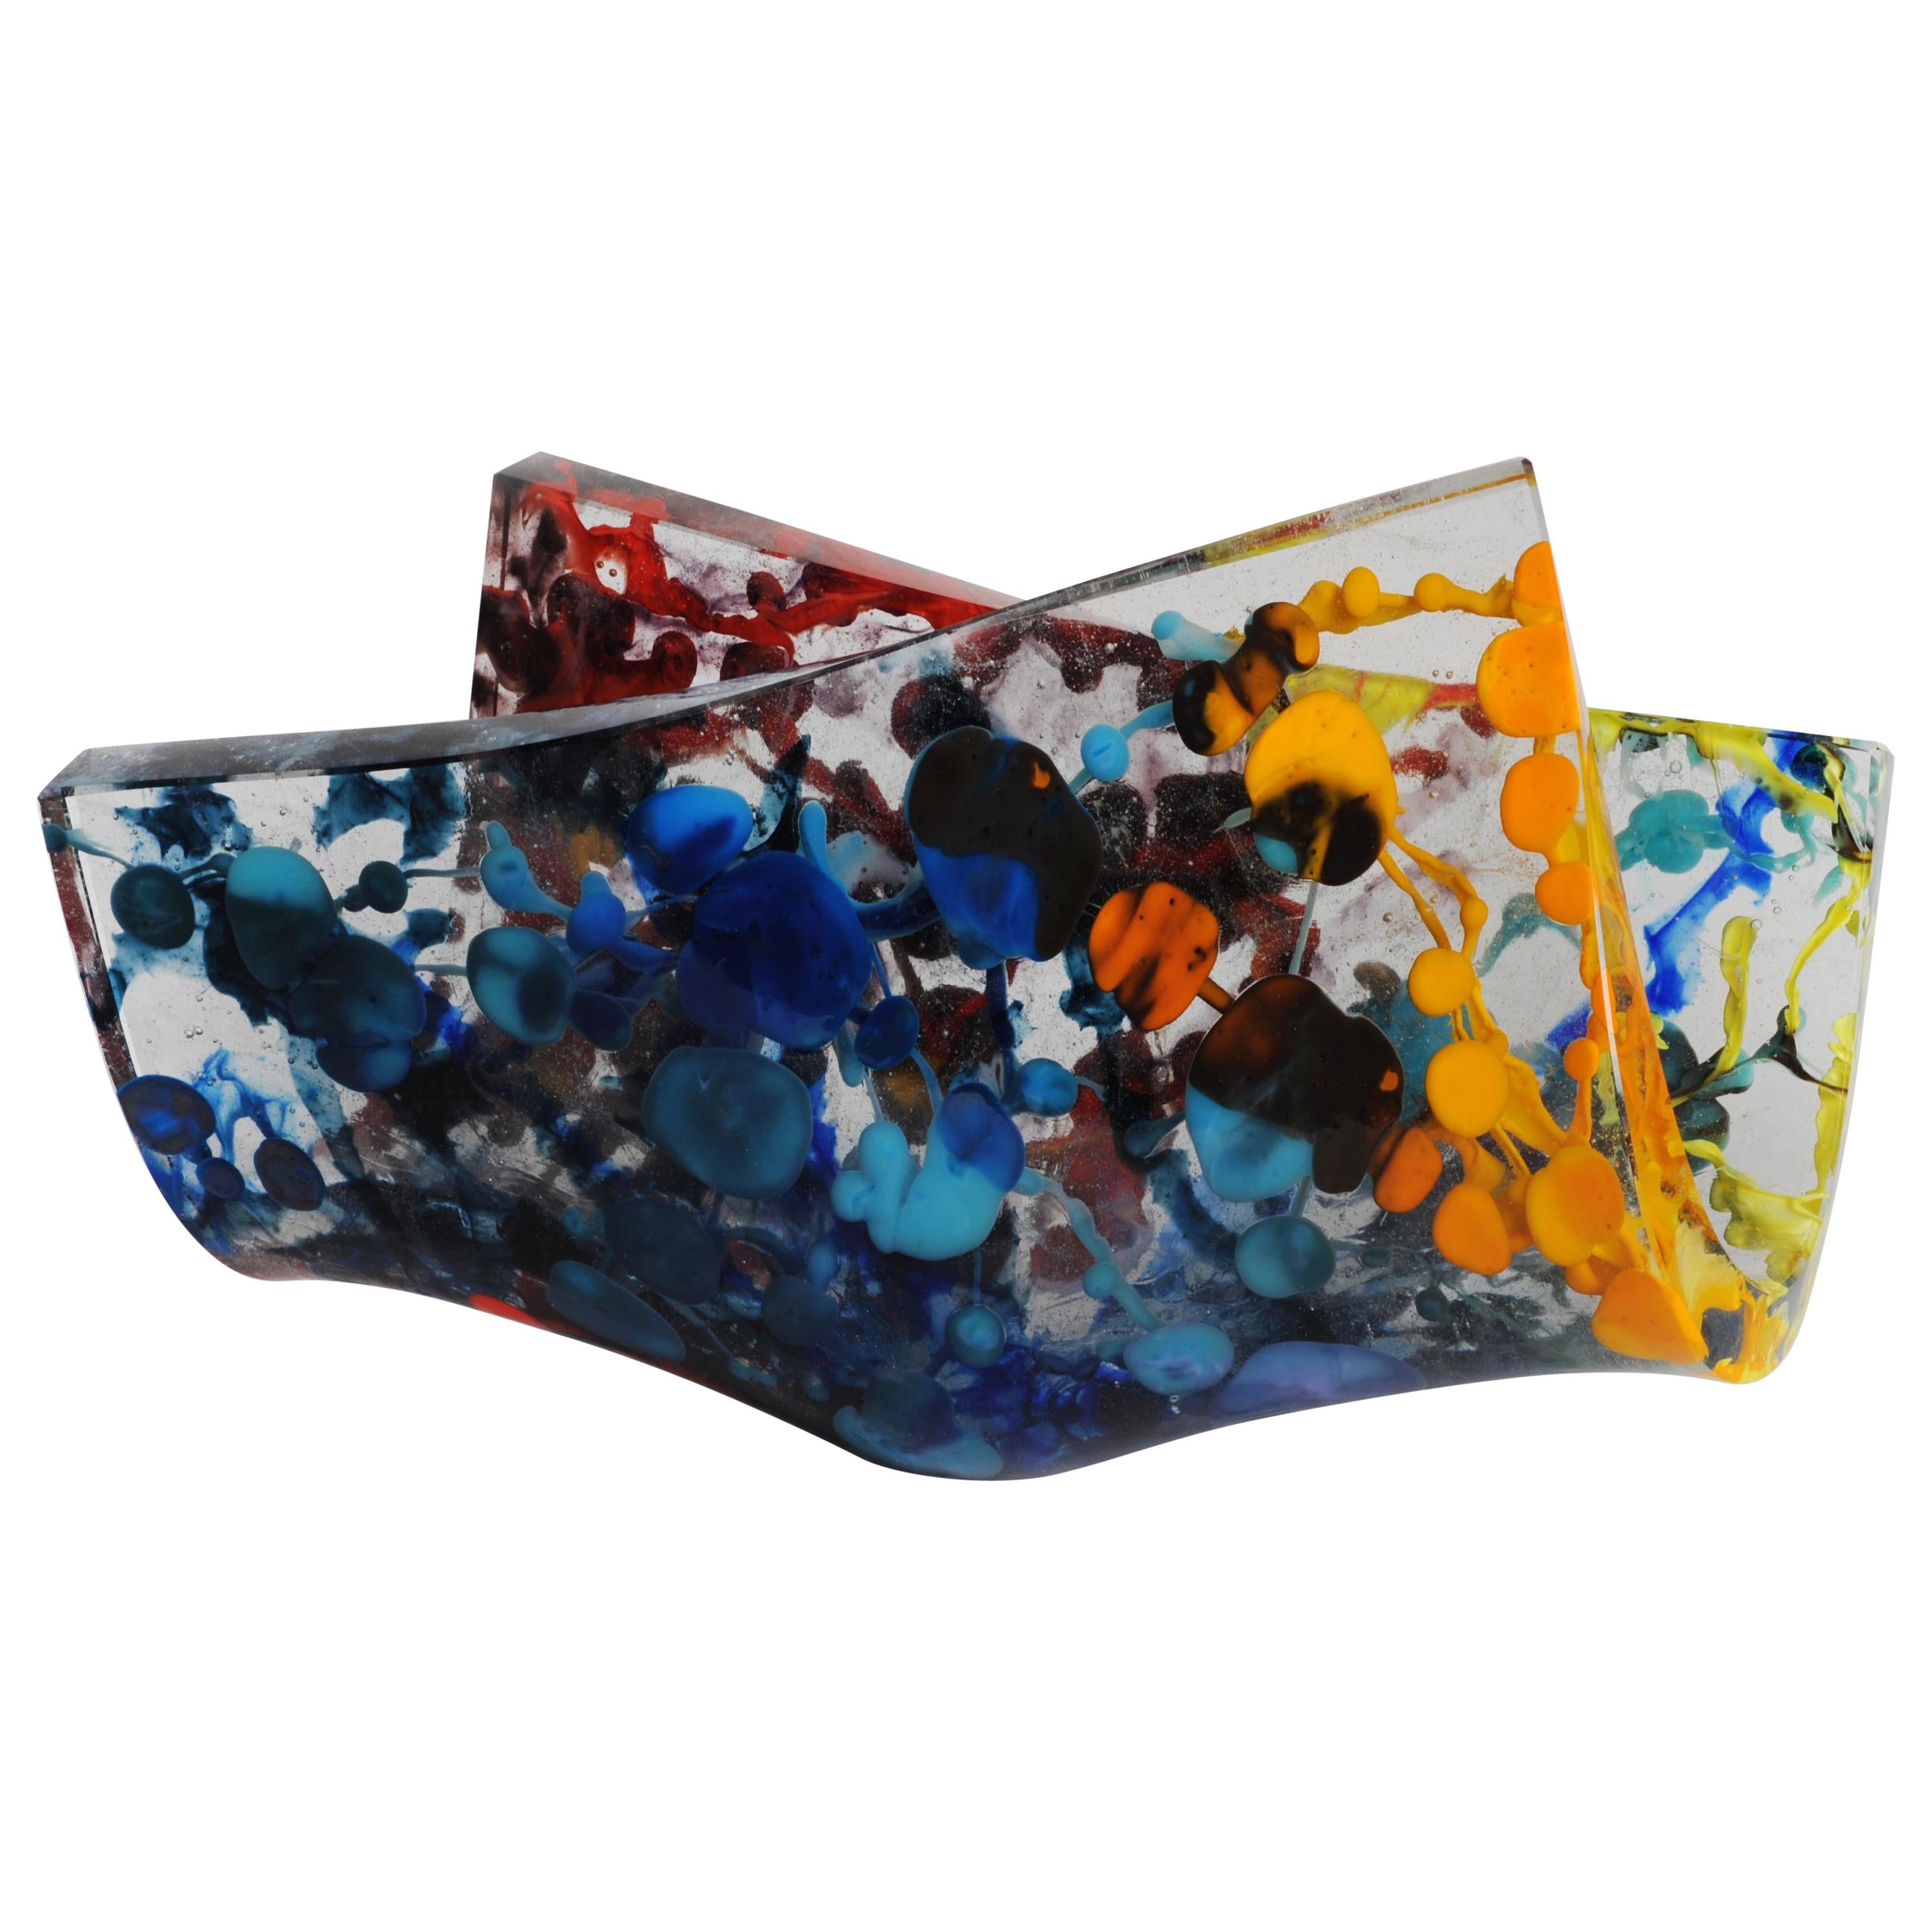 Jimmiz Marea Contemporary Organic Multi-Color Glass Centerpiece Sculpture For Sale